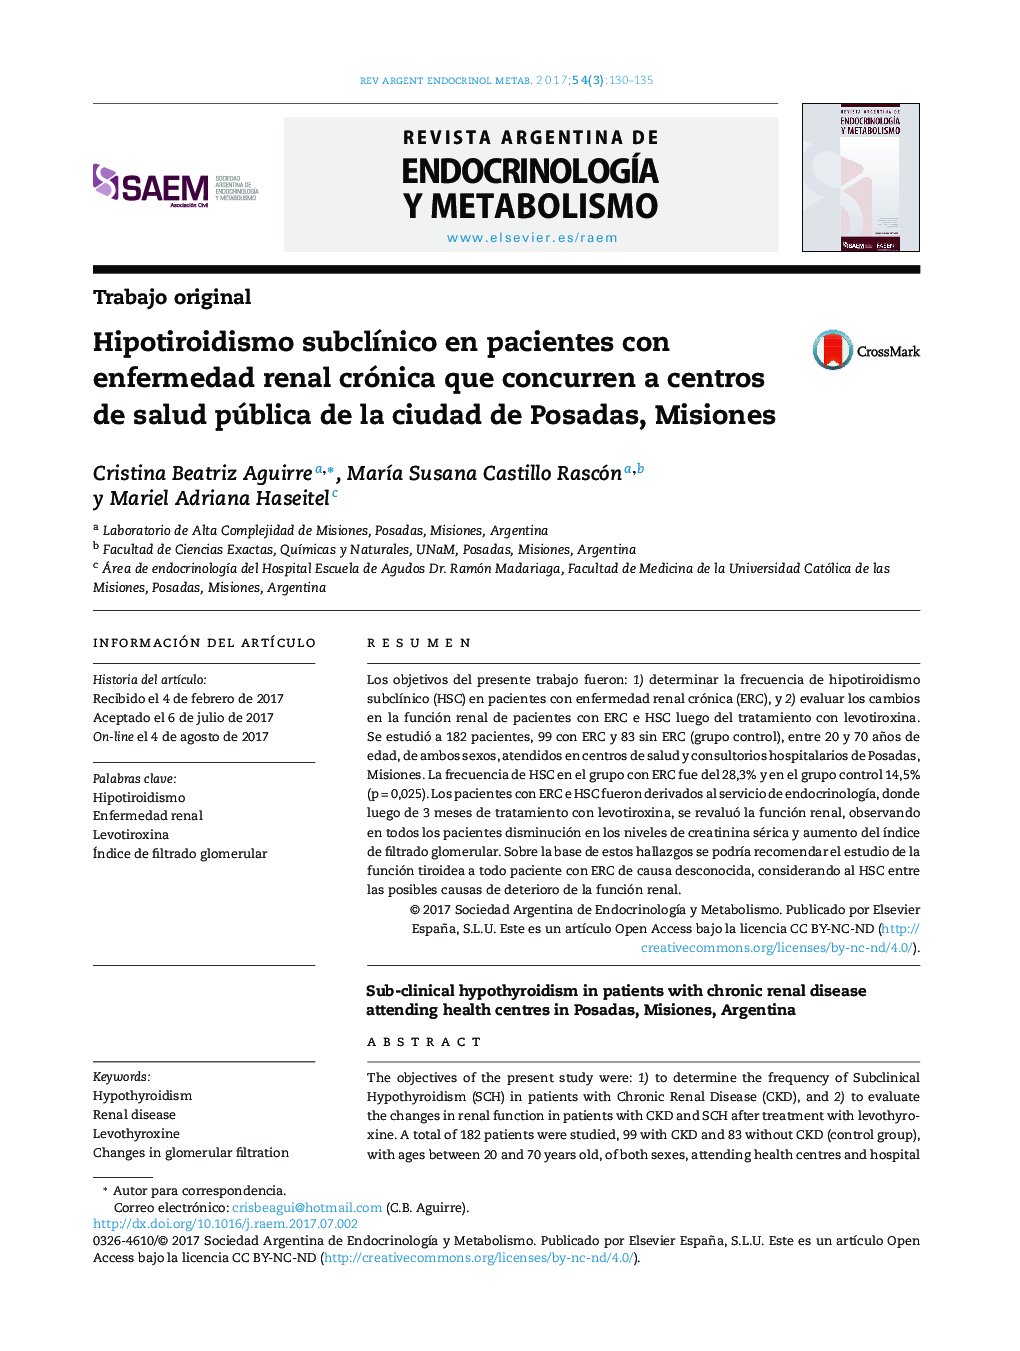 Hipotiroidismo subclÃ­nico en pacientes con enfermedad renal crónica que concurren a centros de salud pública de la ciudad de Posadas, Misiones